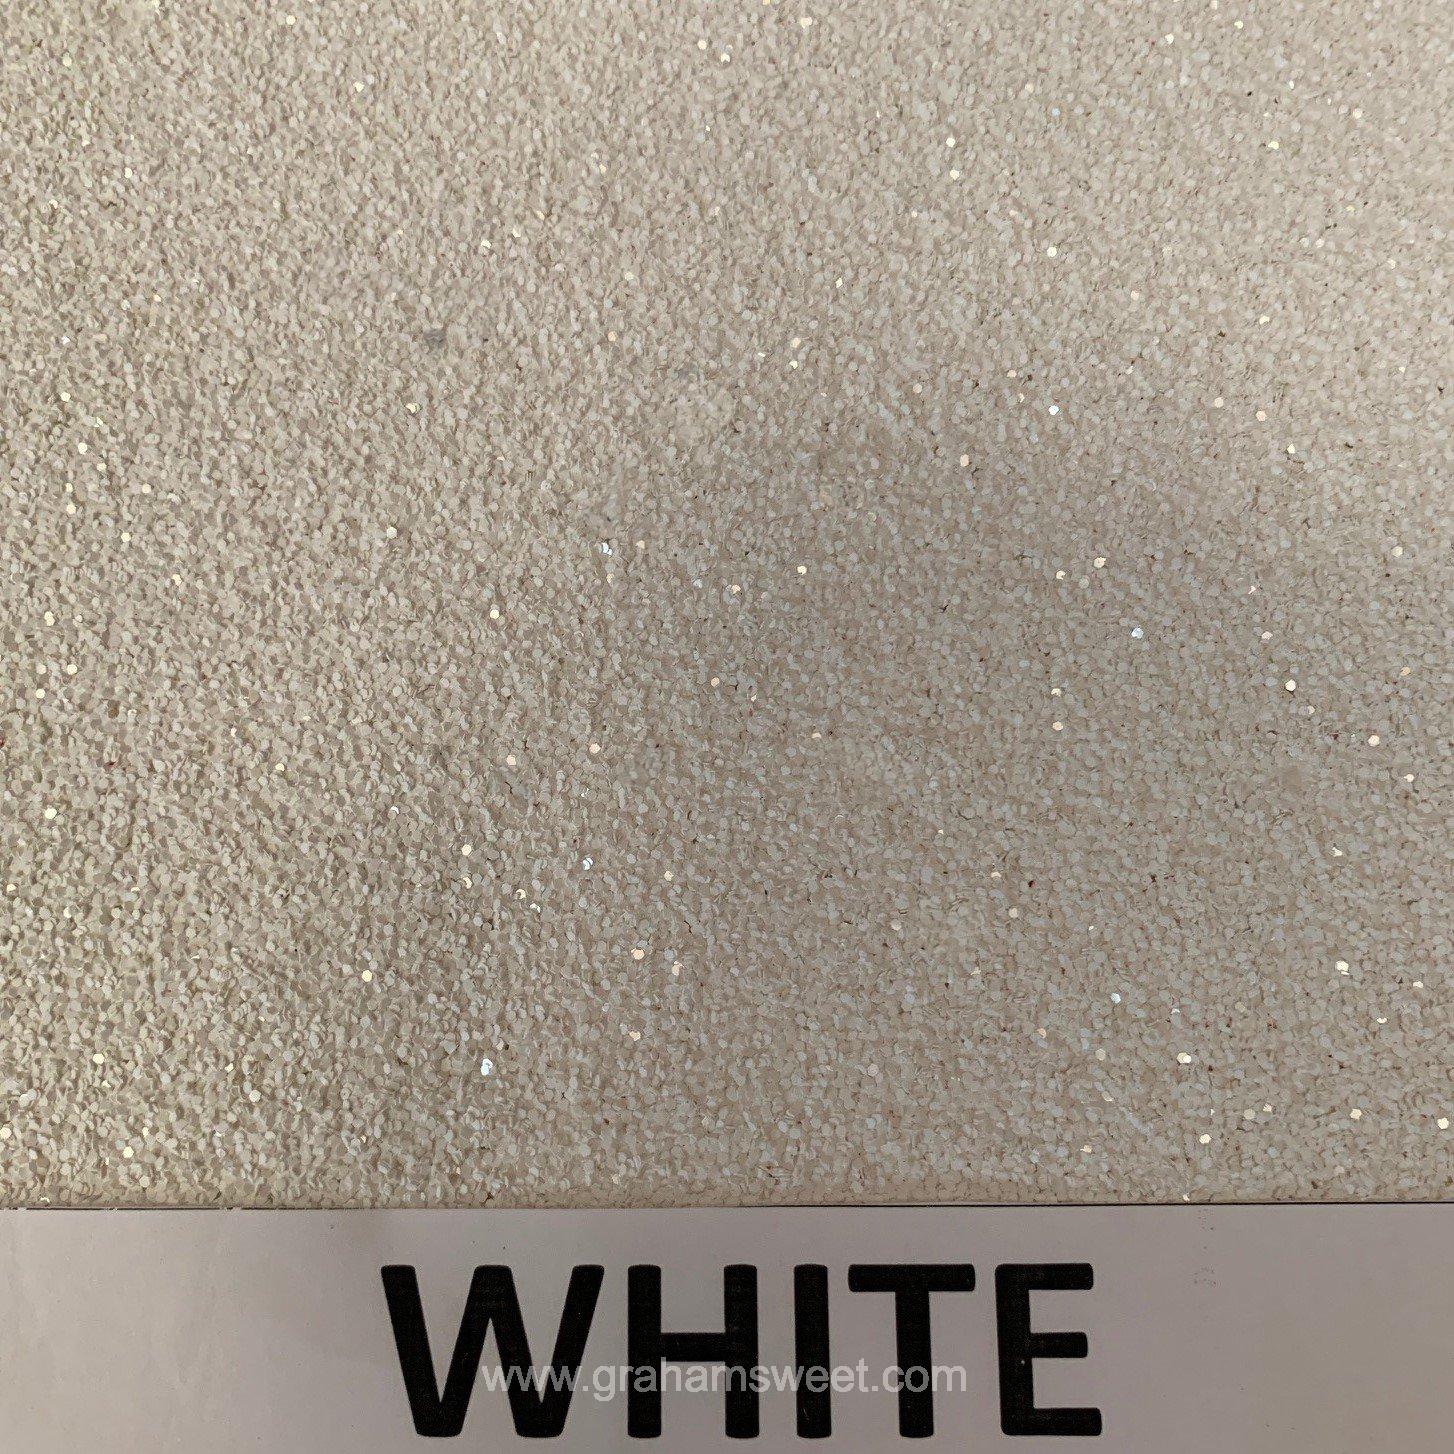 white glitter